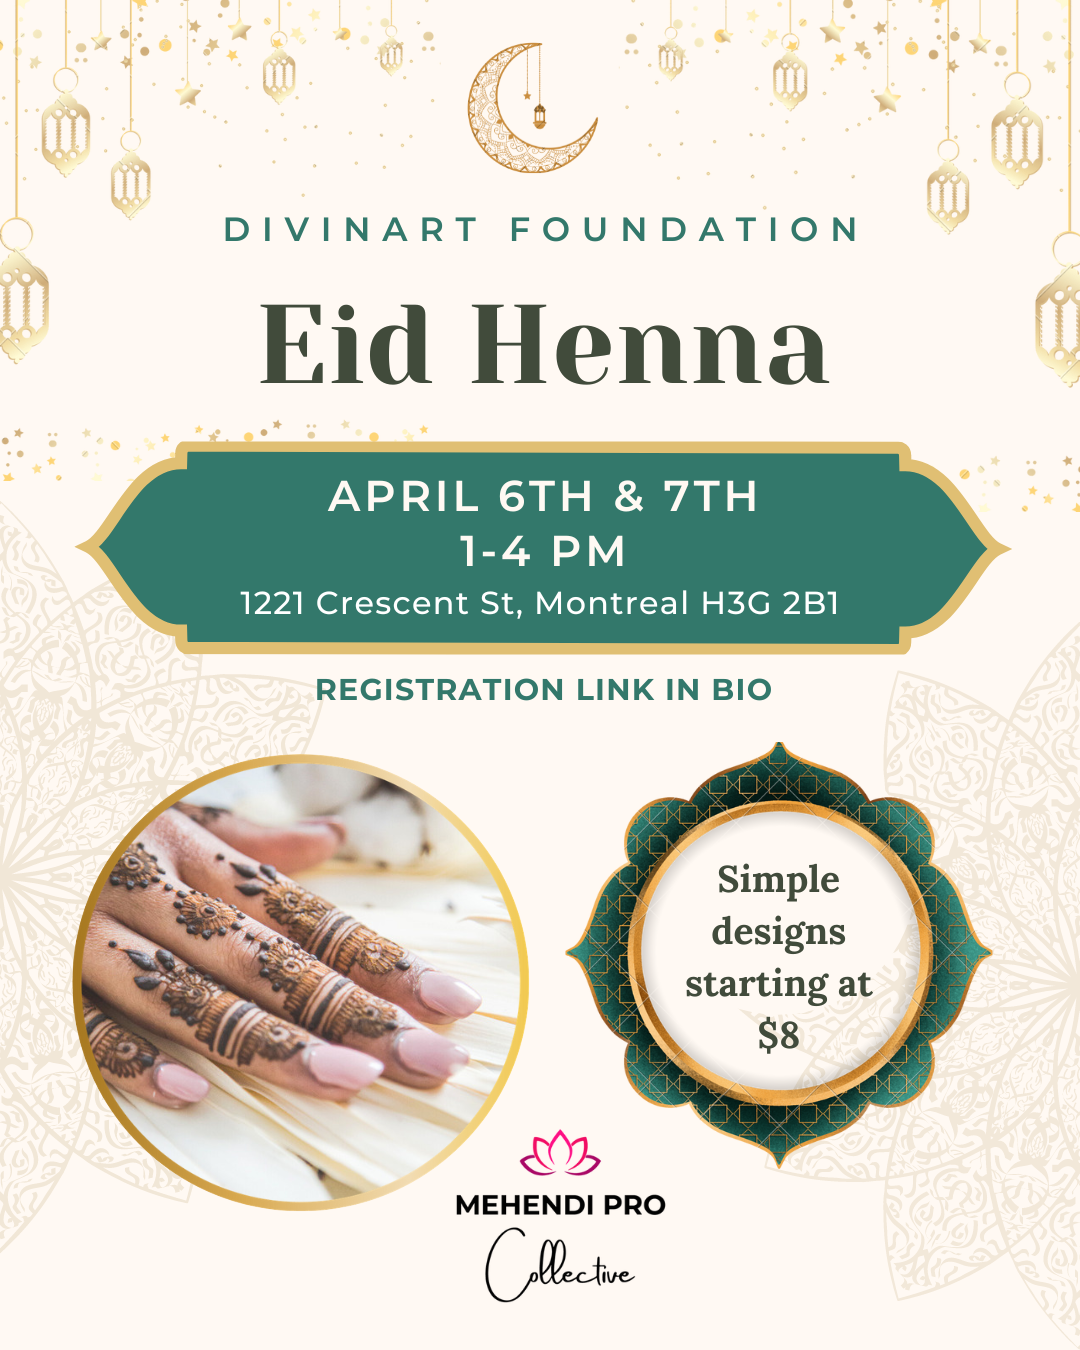 Divinart Foundation Eid Henna